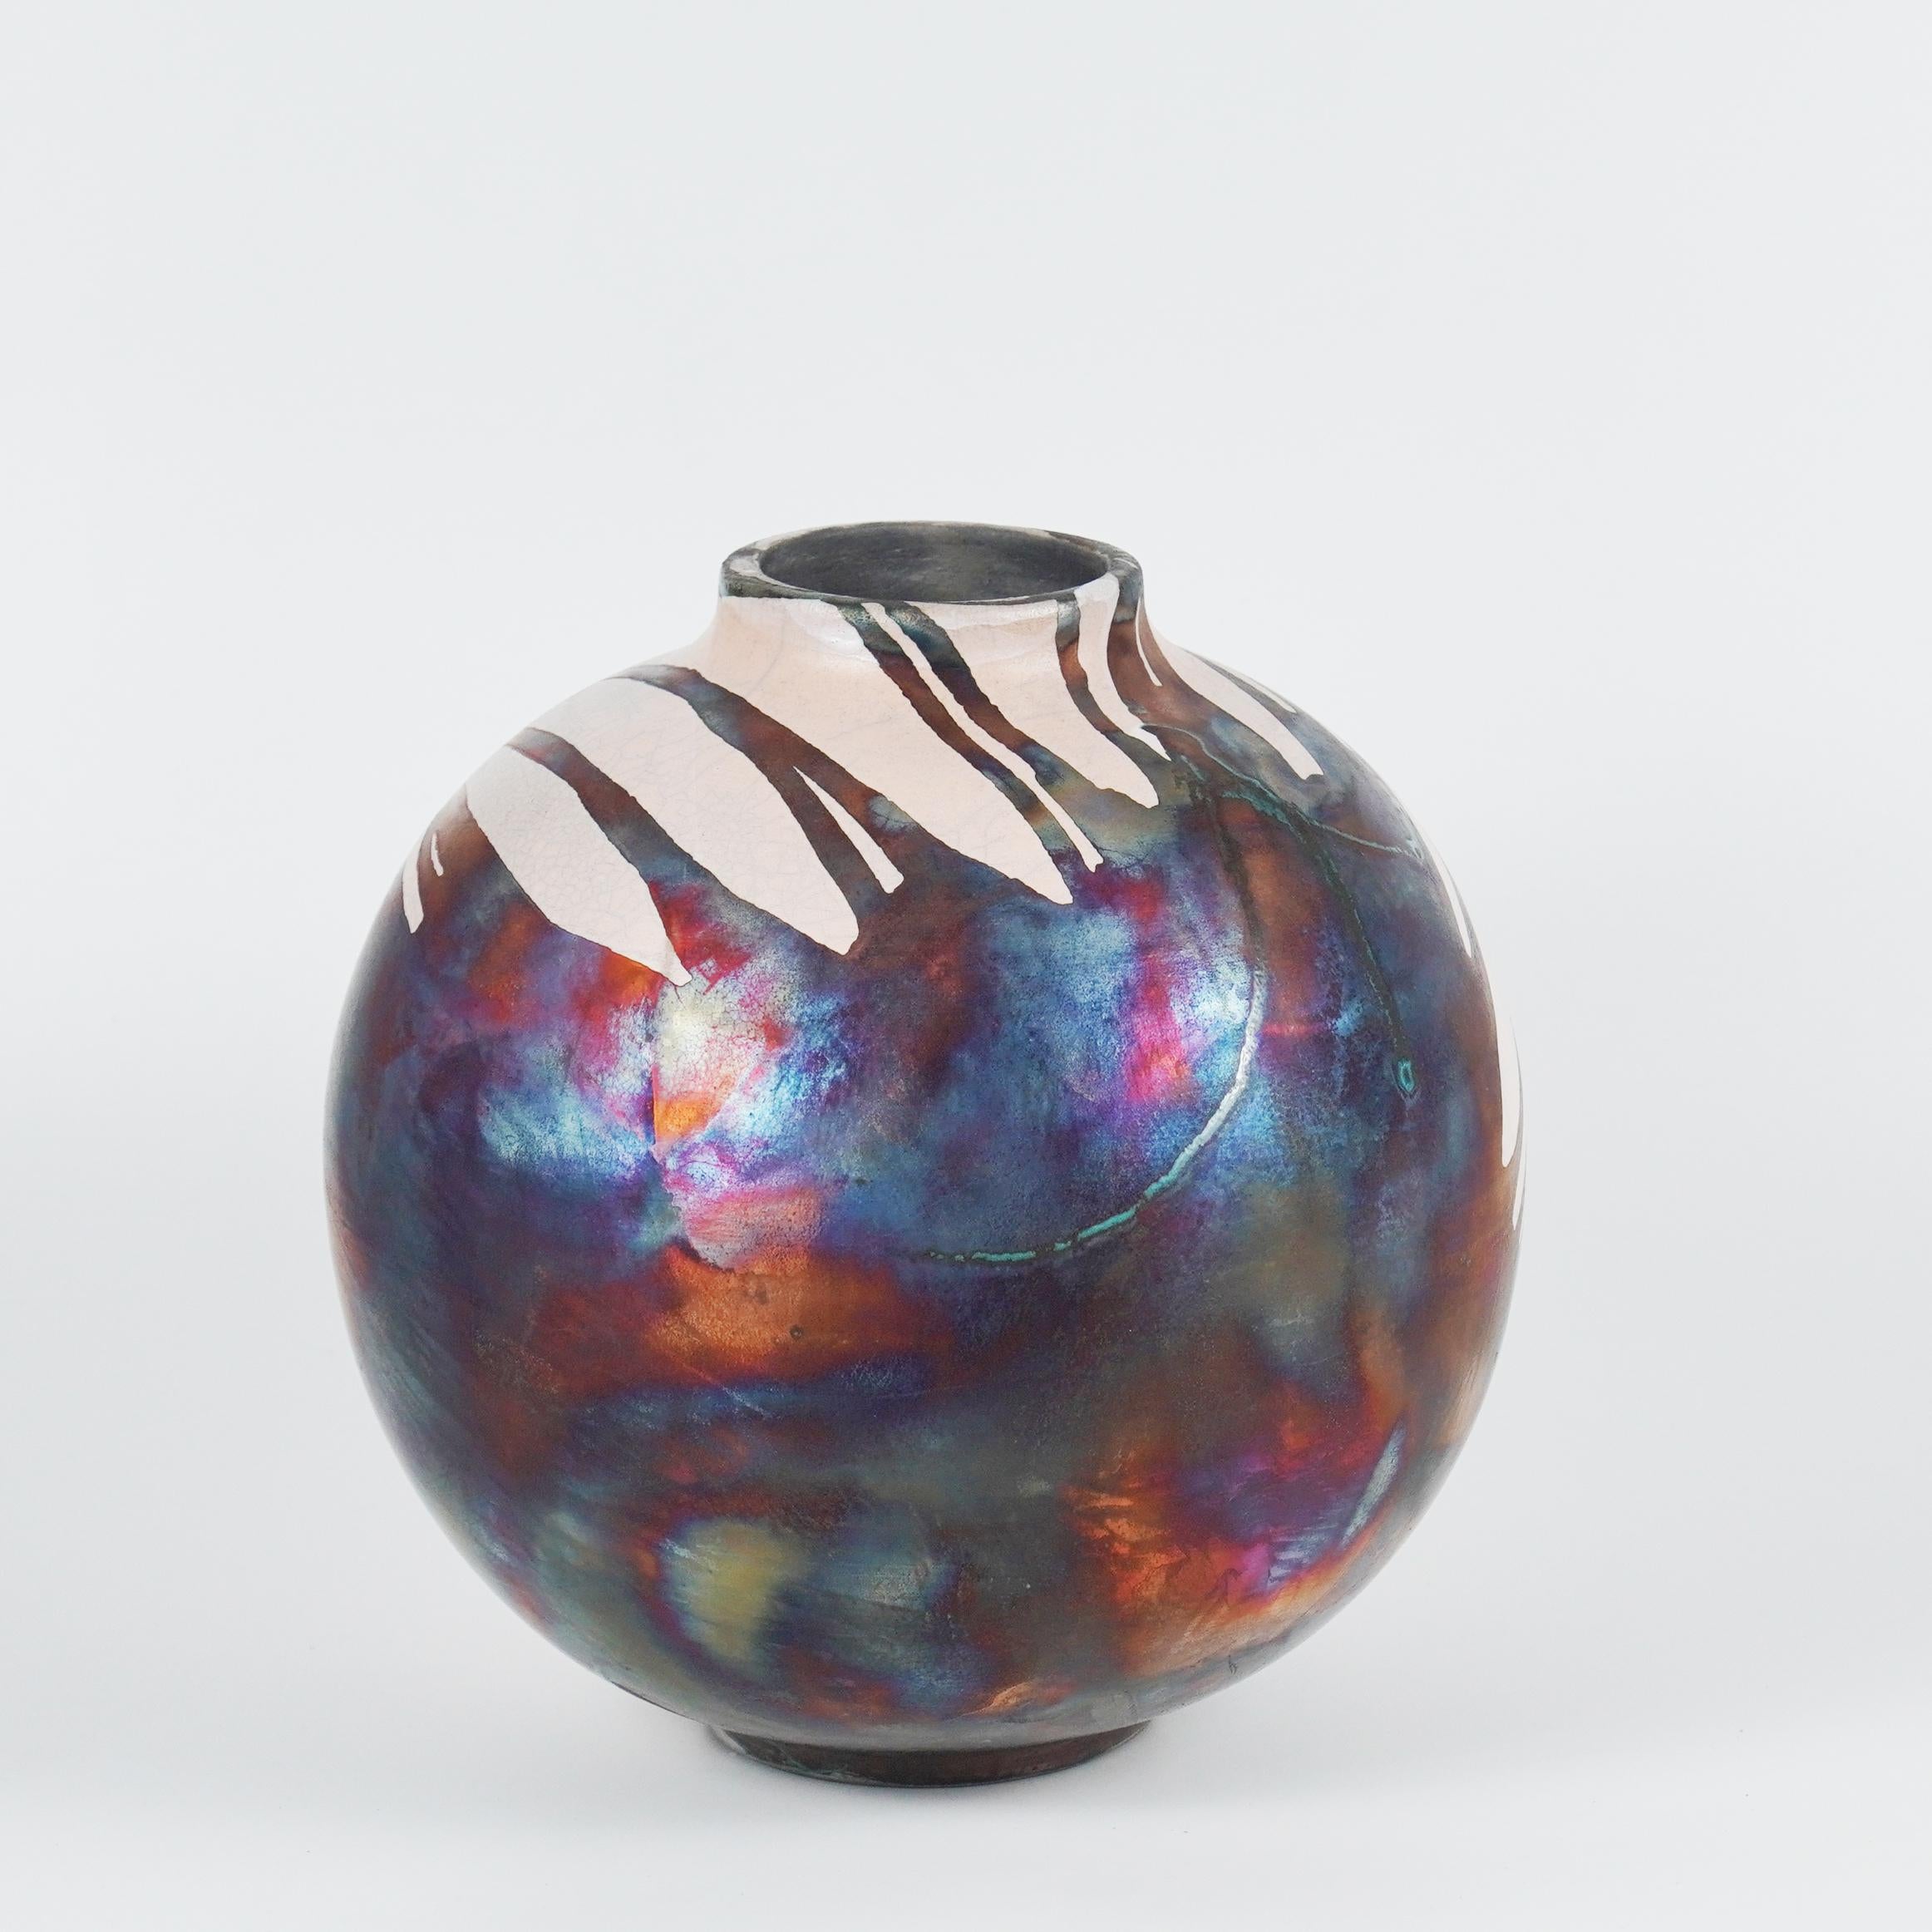 Ein faszinierender Anblick, sobald die regenbogenartigen Patinas ins Auge fallen. Diese Globe Vase ist ein rundes, geräumiges Stück, das mit der Raku-Technik hergestellt wird, was zu einer schönen, unvorhersehbaren Oberfläche führt. Diese Vase